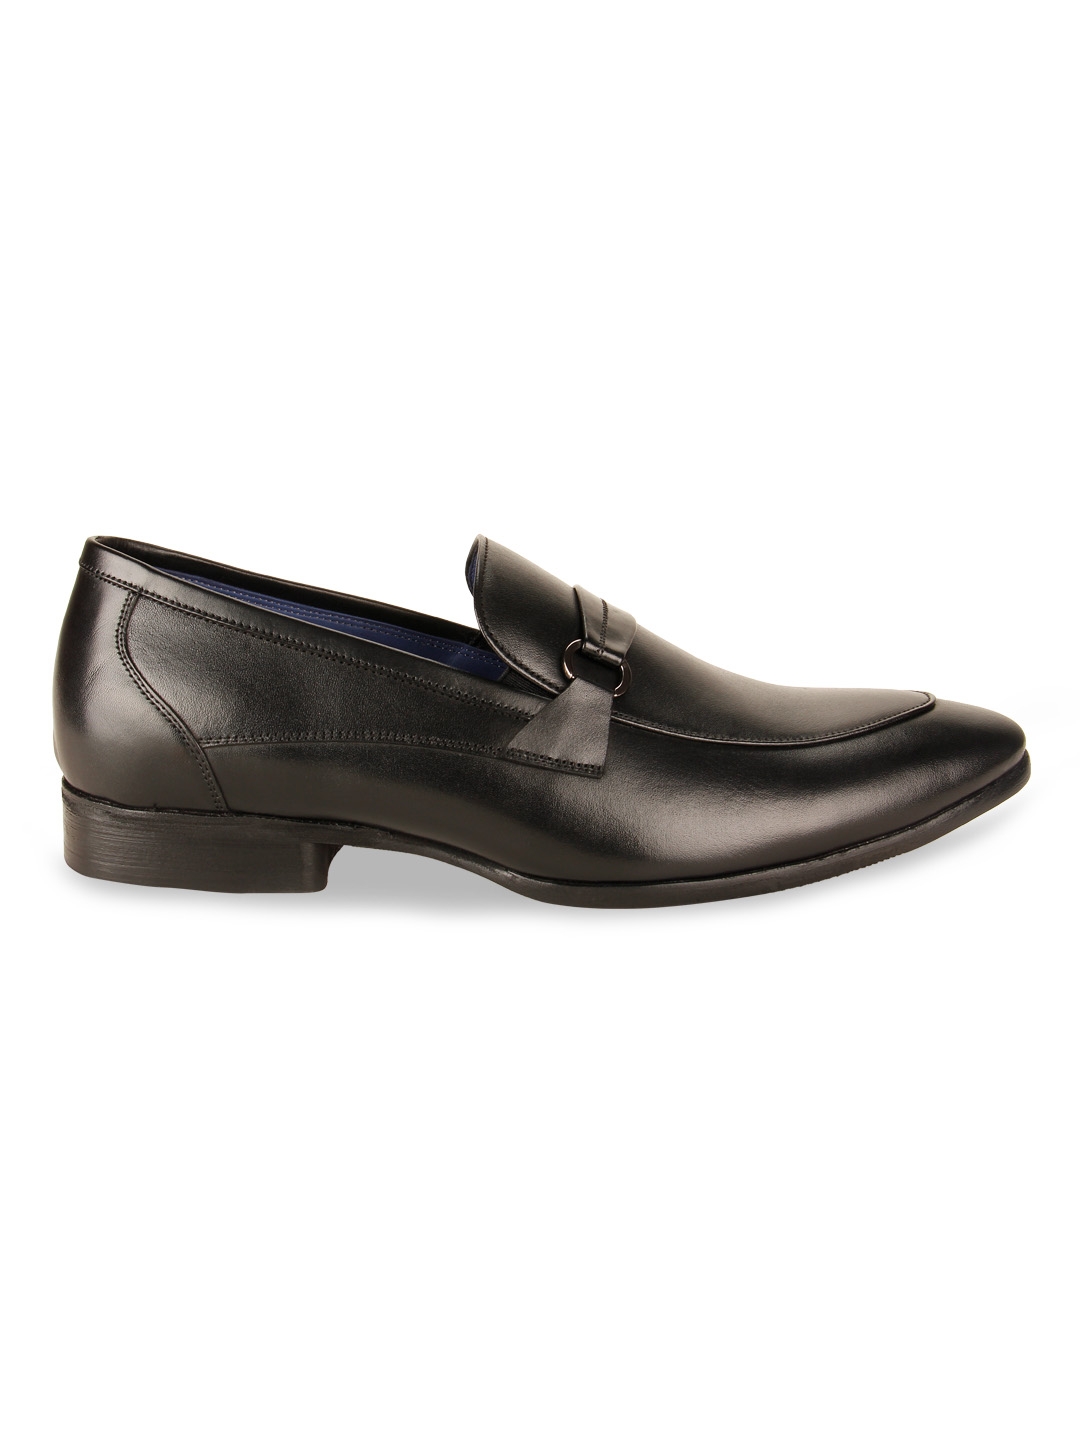 Men Leather Formal Slip On shoes